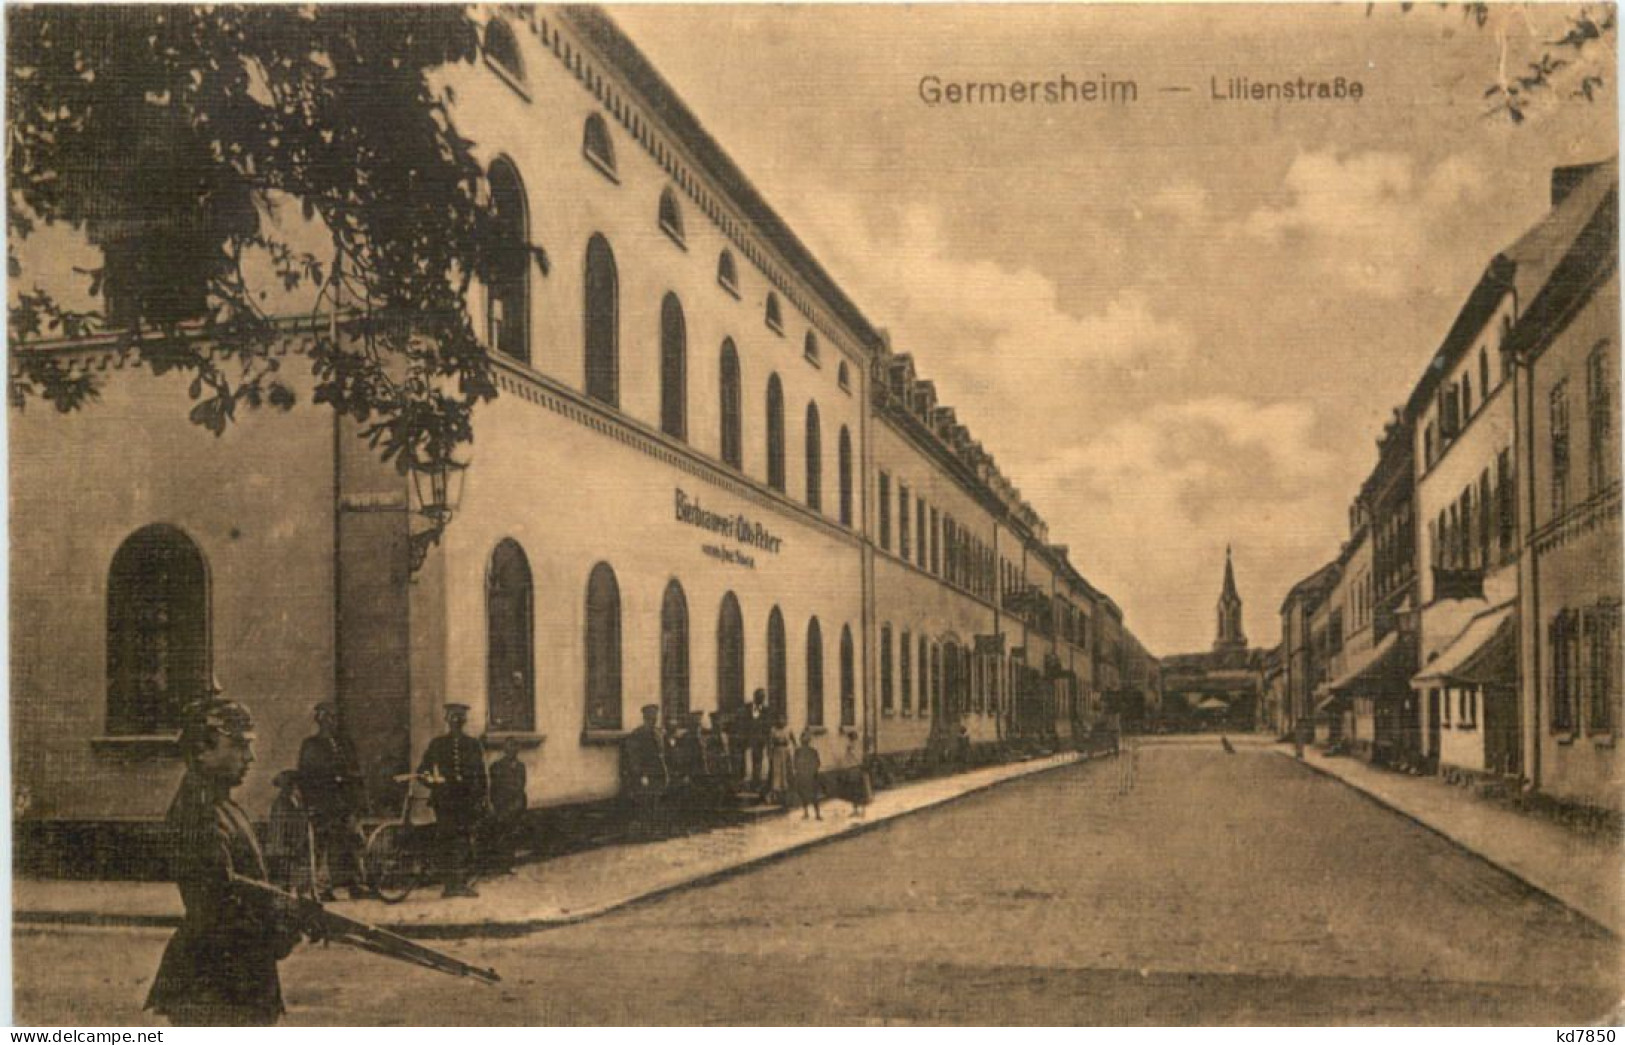 Gruss Aus Germersheim - Lilienstrasse - Germersheim